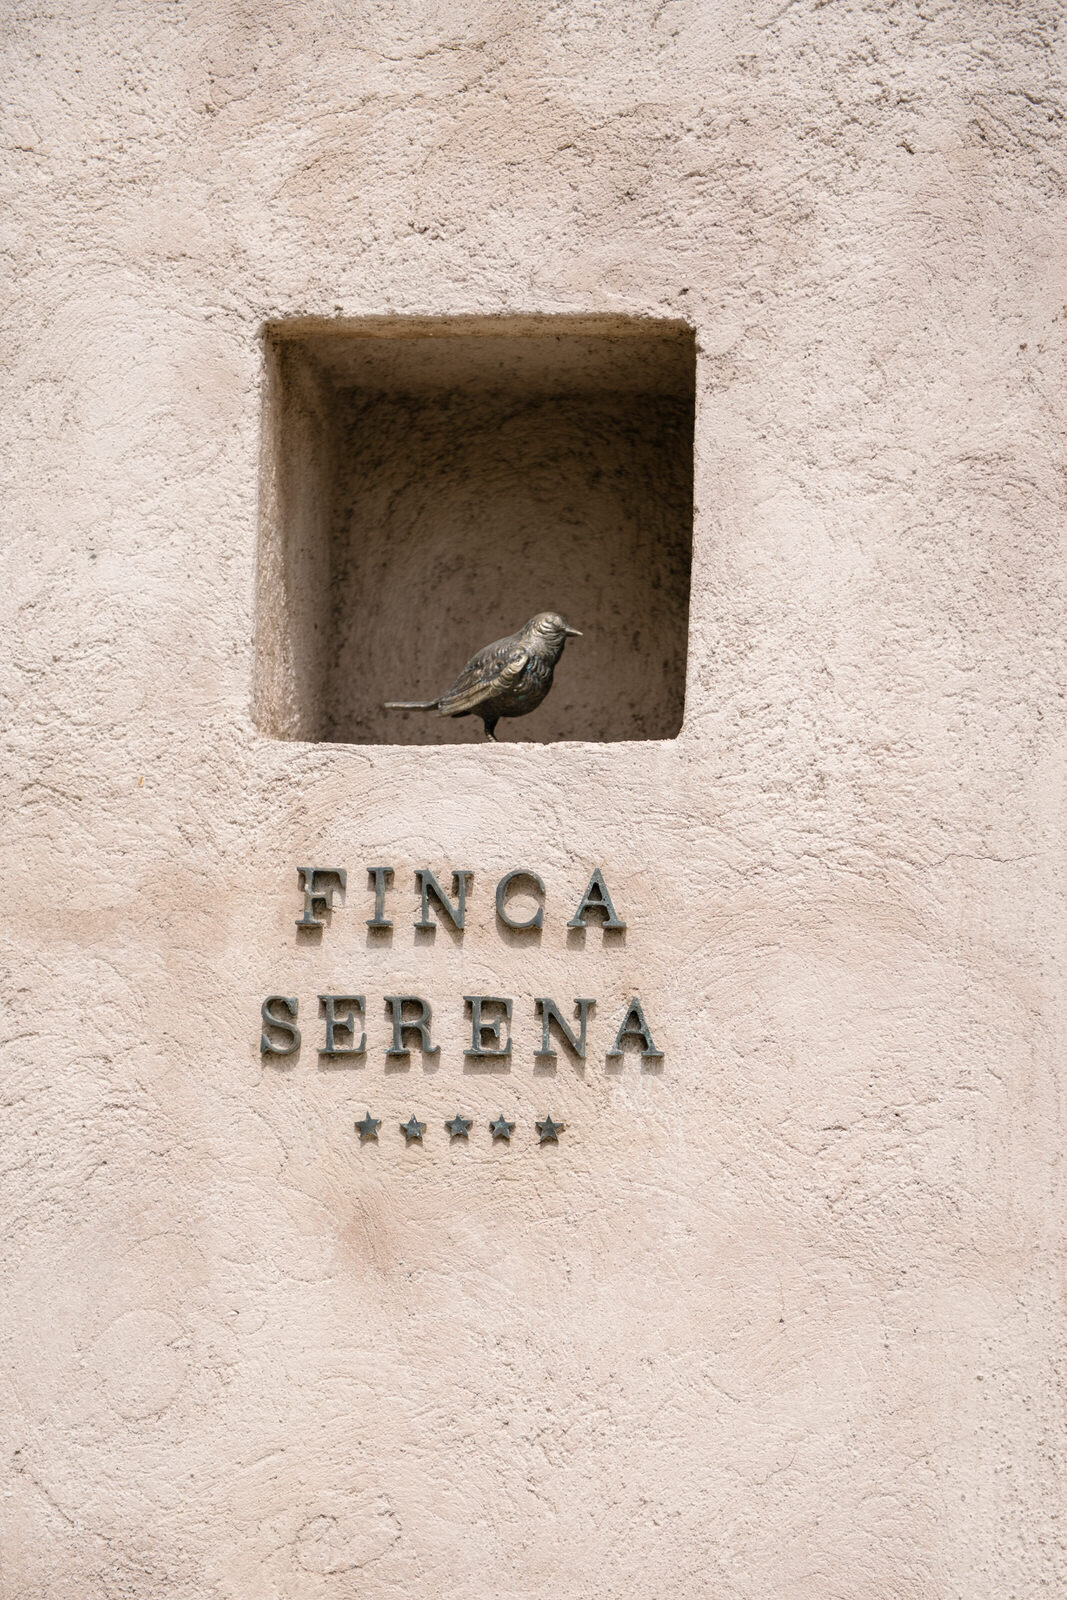 Finca Serena Mallorca Destination Wedding Photographer Maria Hibbs-396